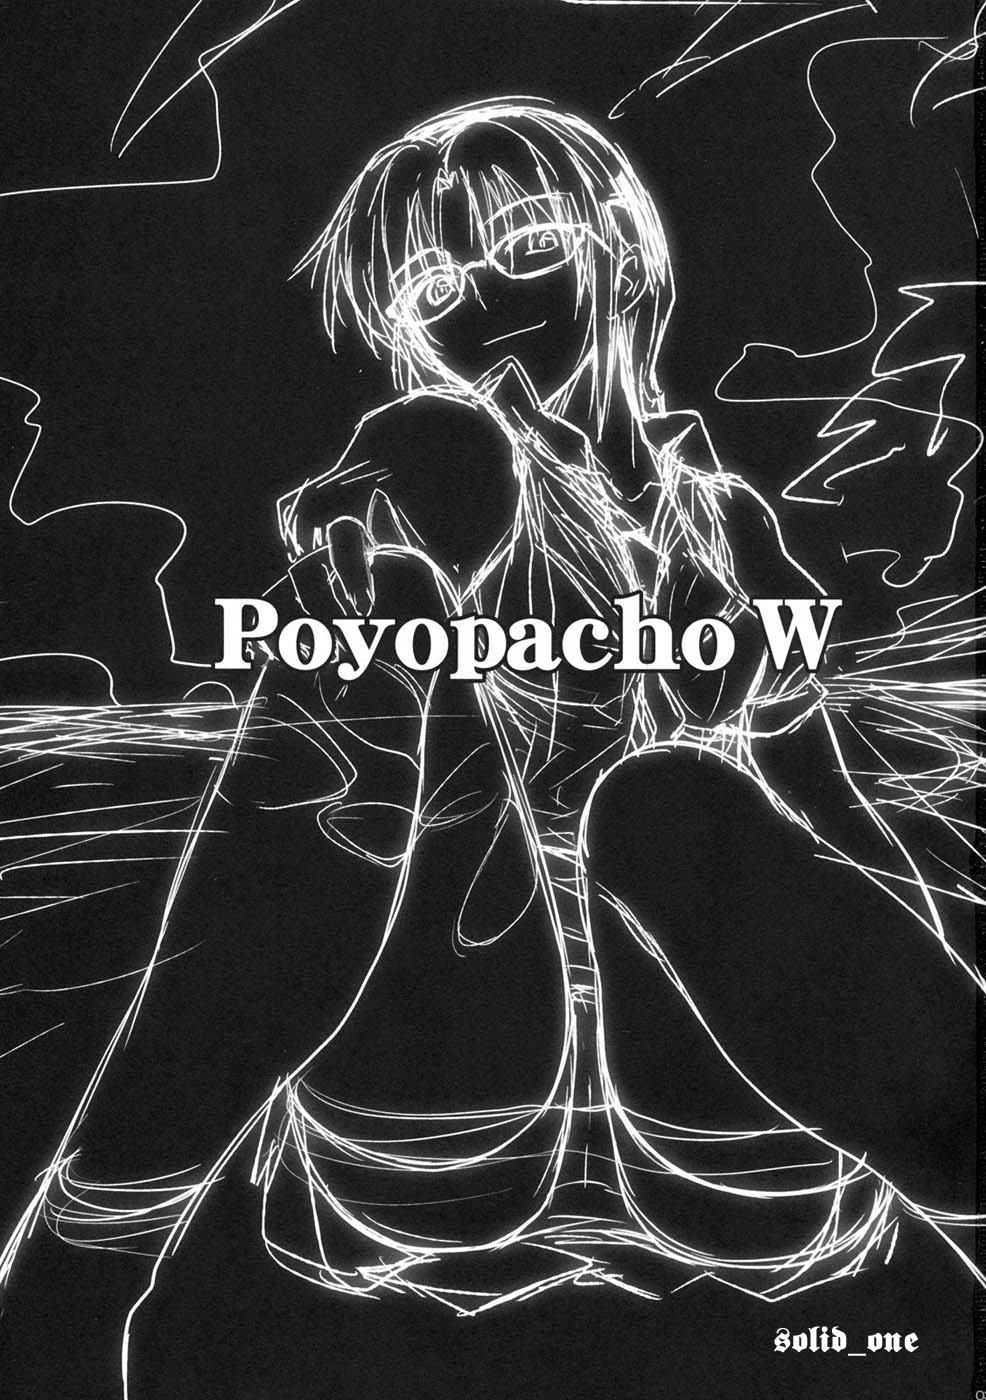 Poyopacho W (spanish) 